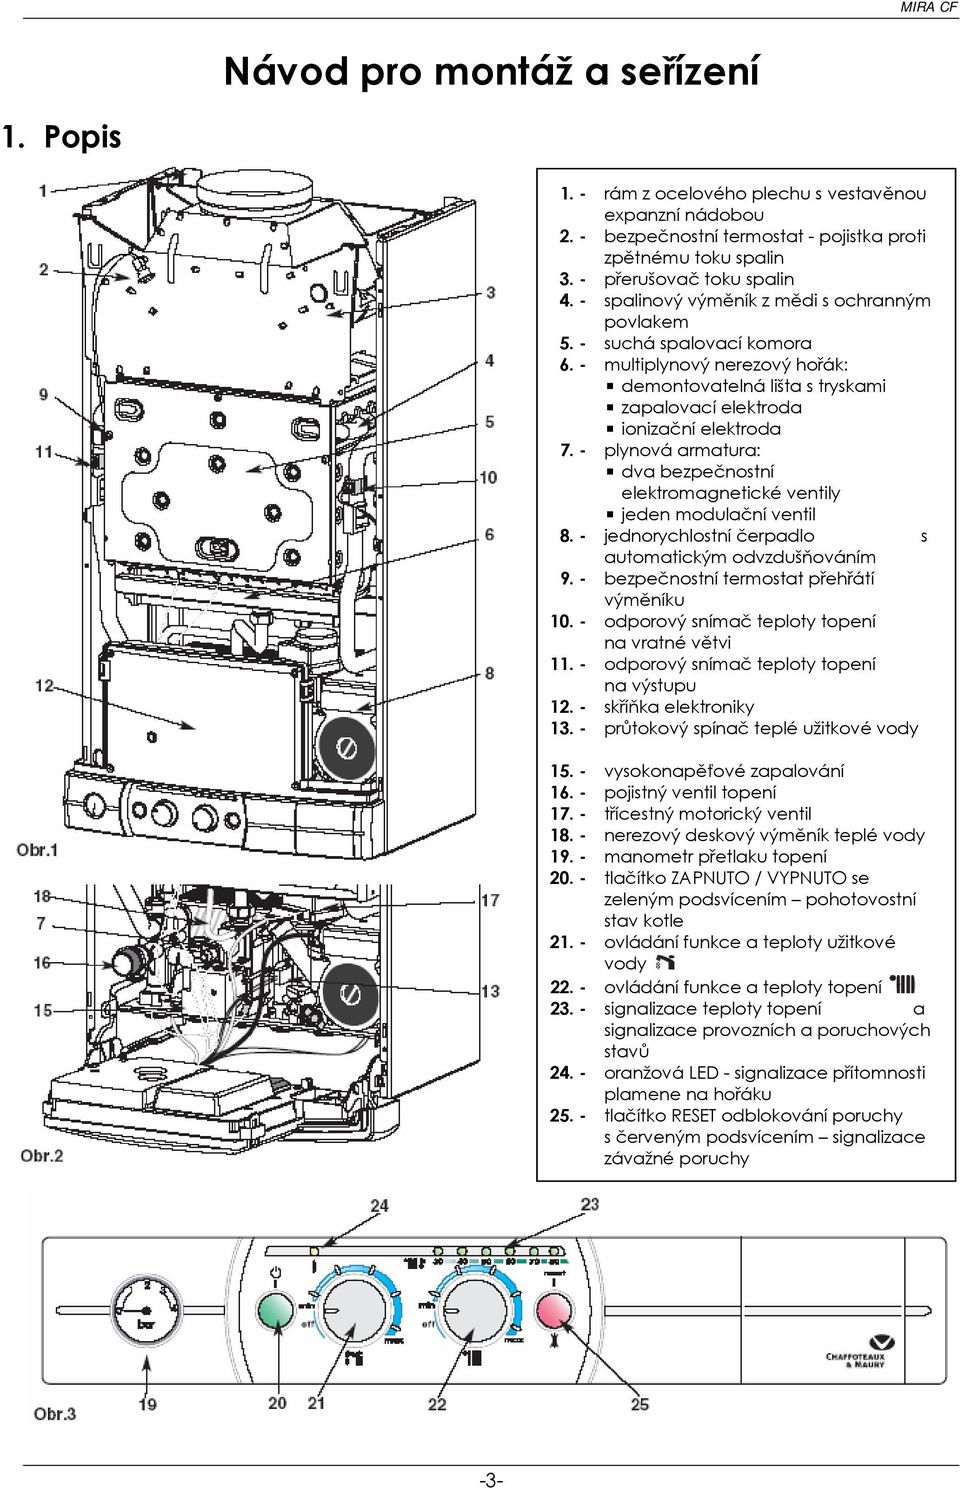 - plynová armatura: dva bezpečnostní elektromagnetické ventily jeden modulační ventil 8. - jednorychlostní čerpadlo s automatickým odvzdušňováním 9. - bezpečnostní termostat přehřátí výměníku 10.